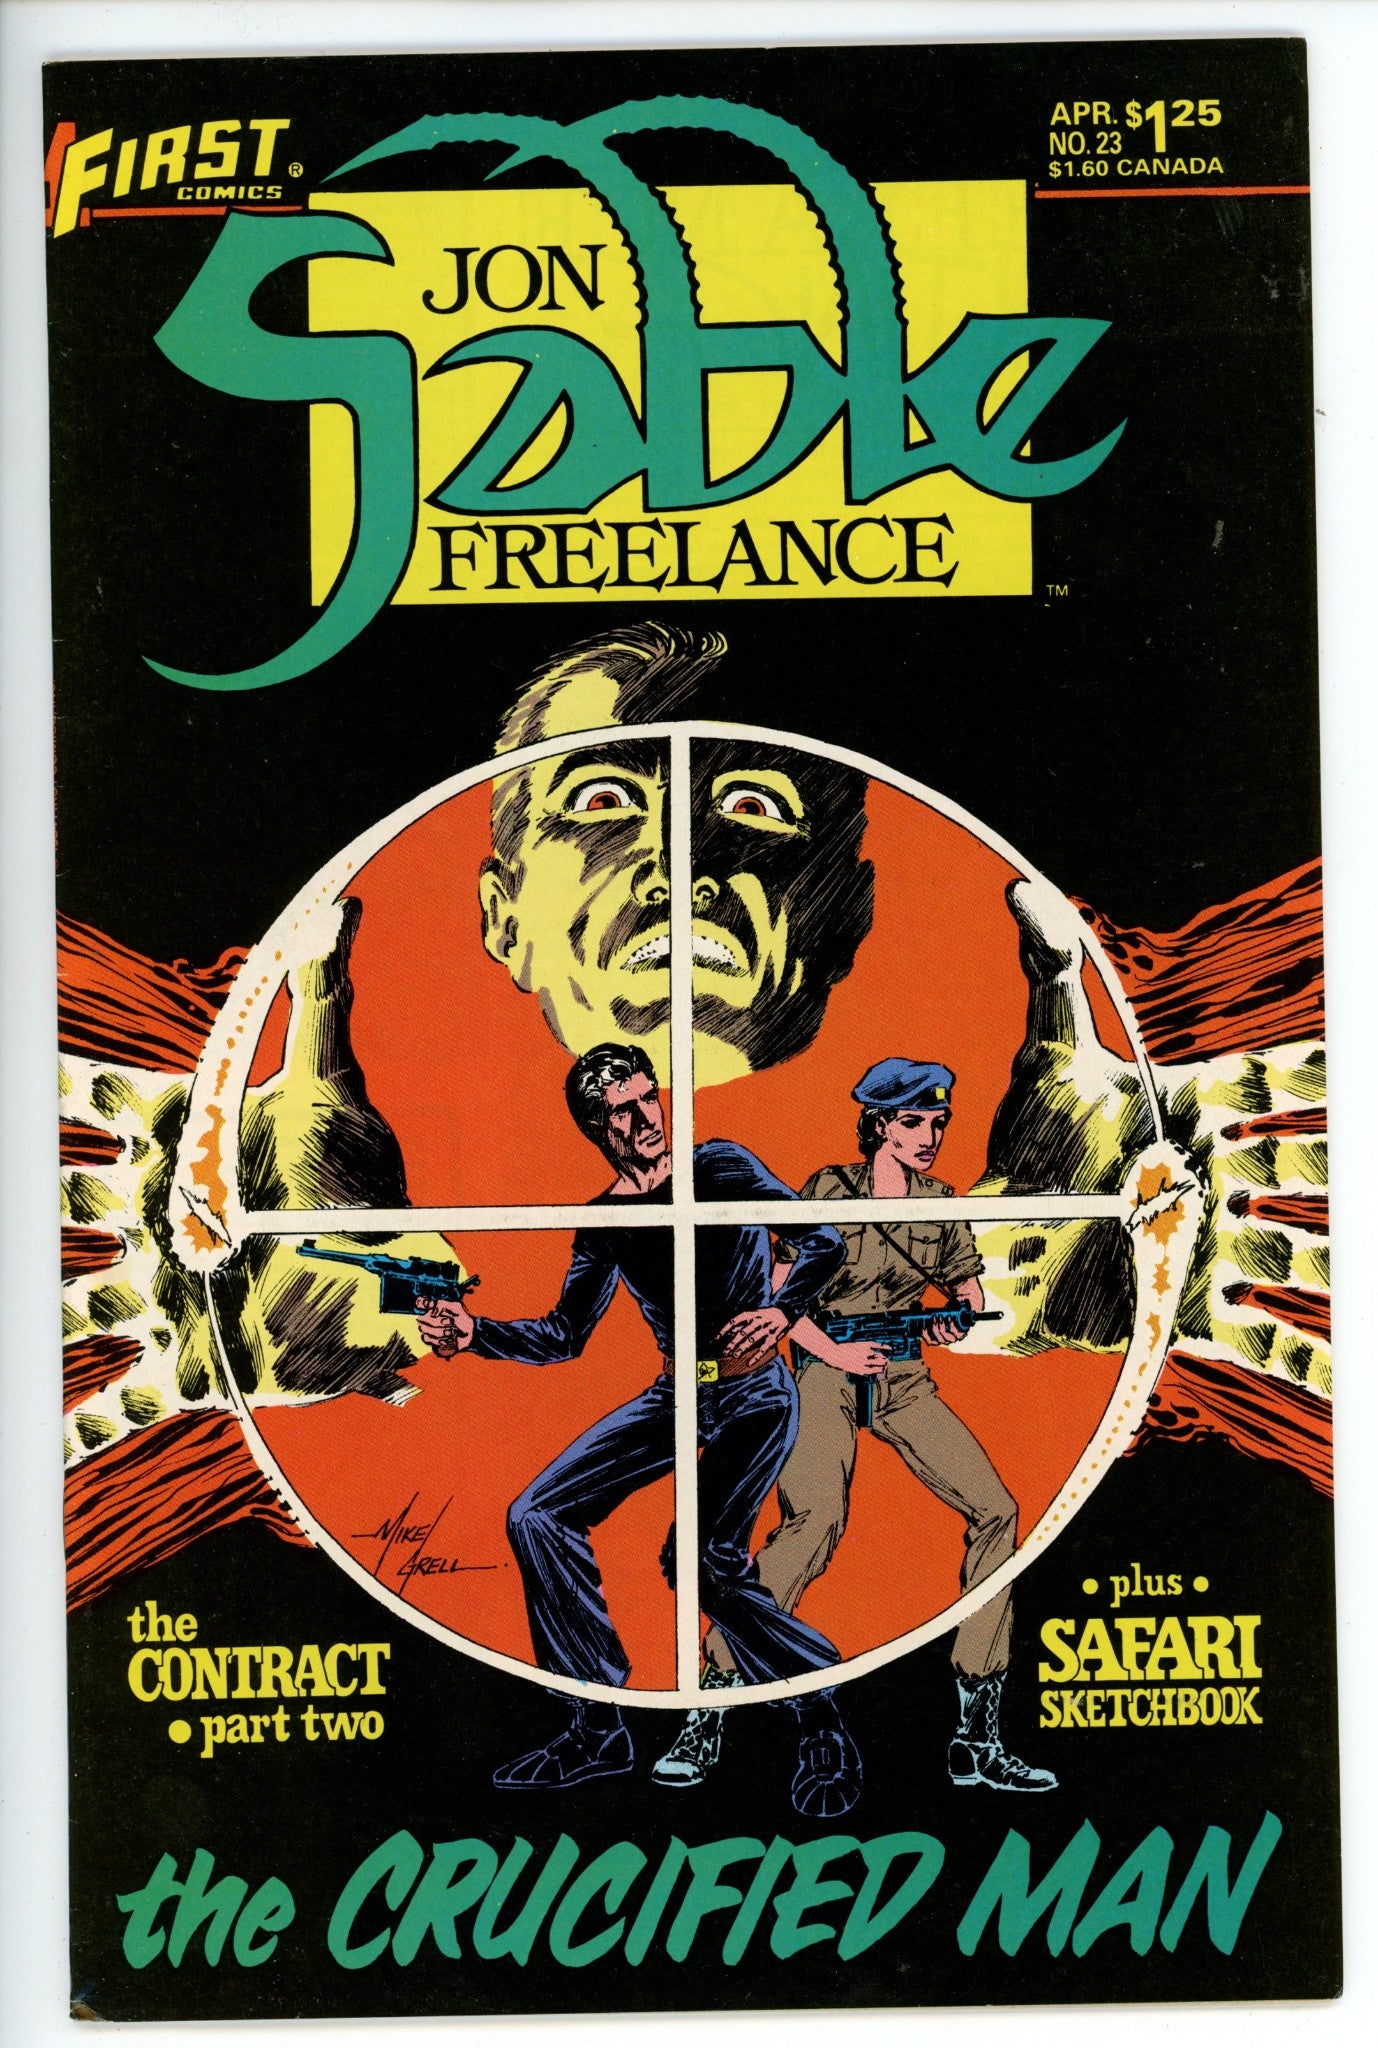 Jon Sable Freelance 23-First Comics-CaptCan Comics Inc